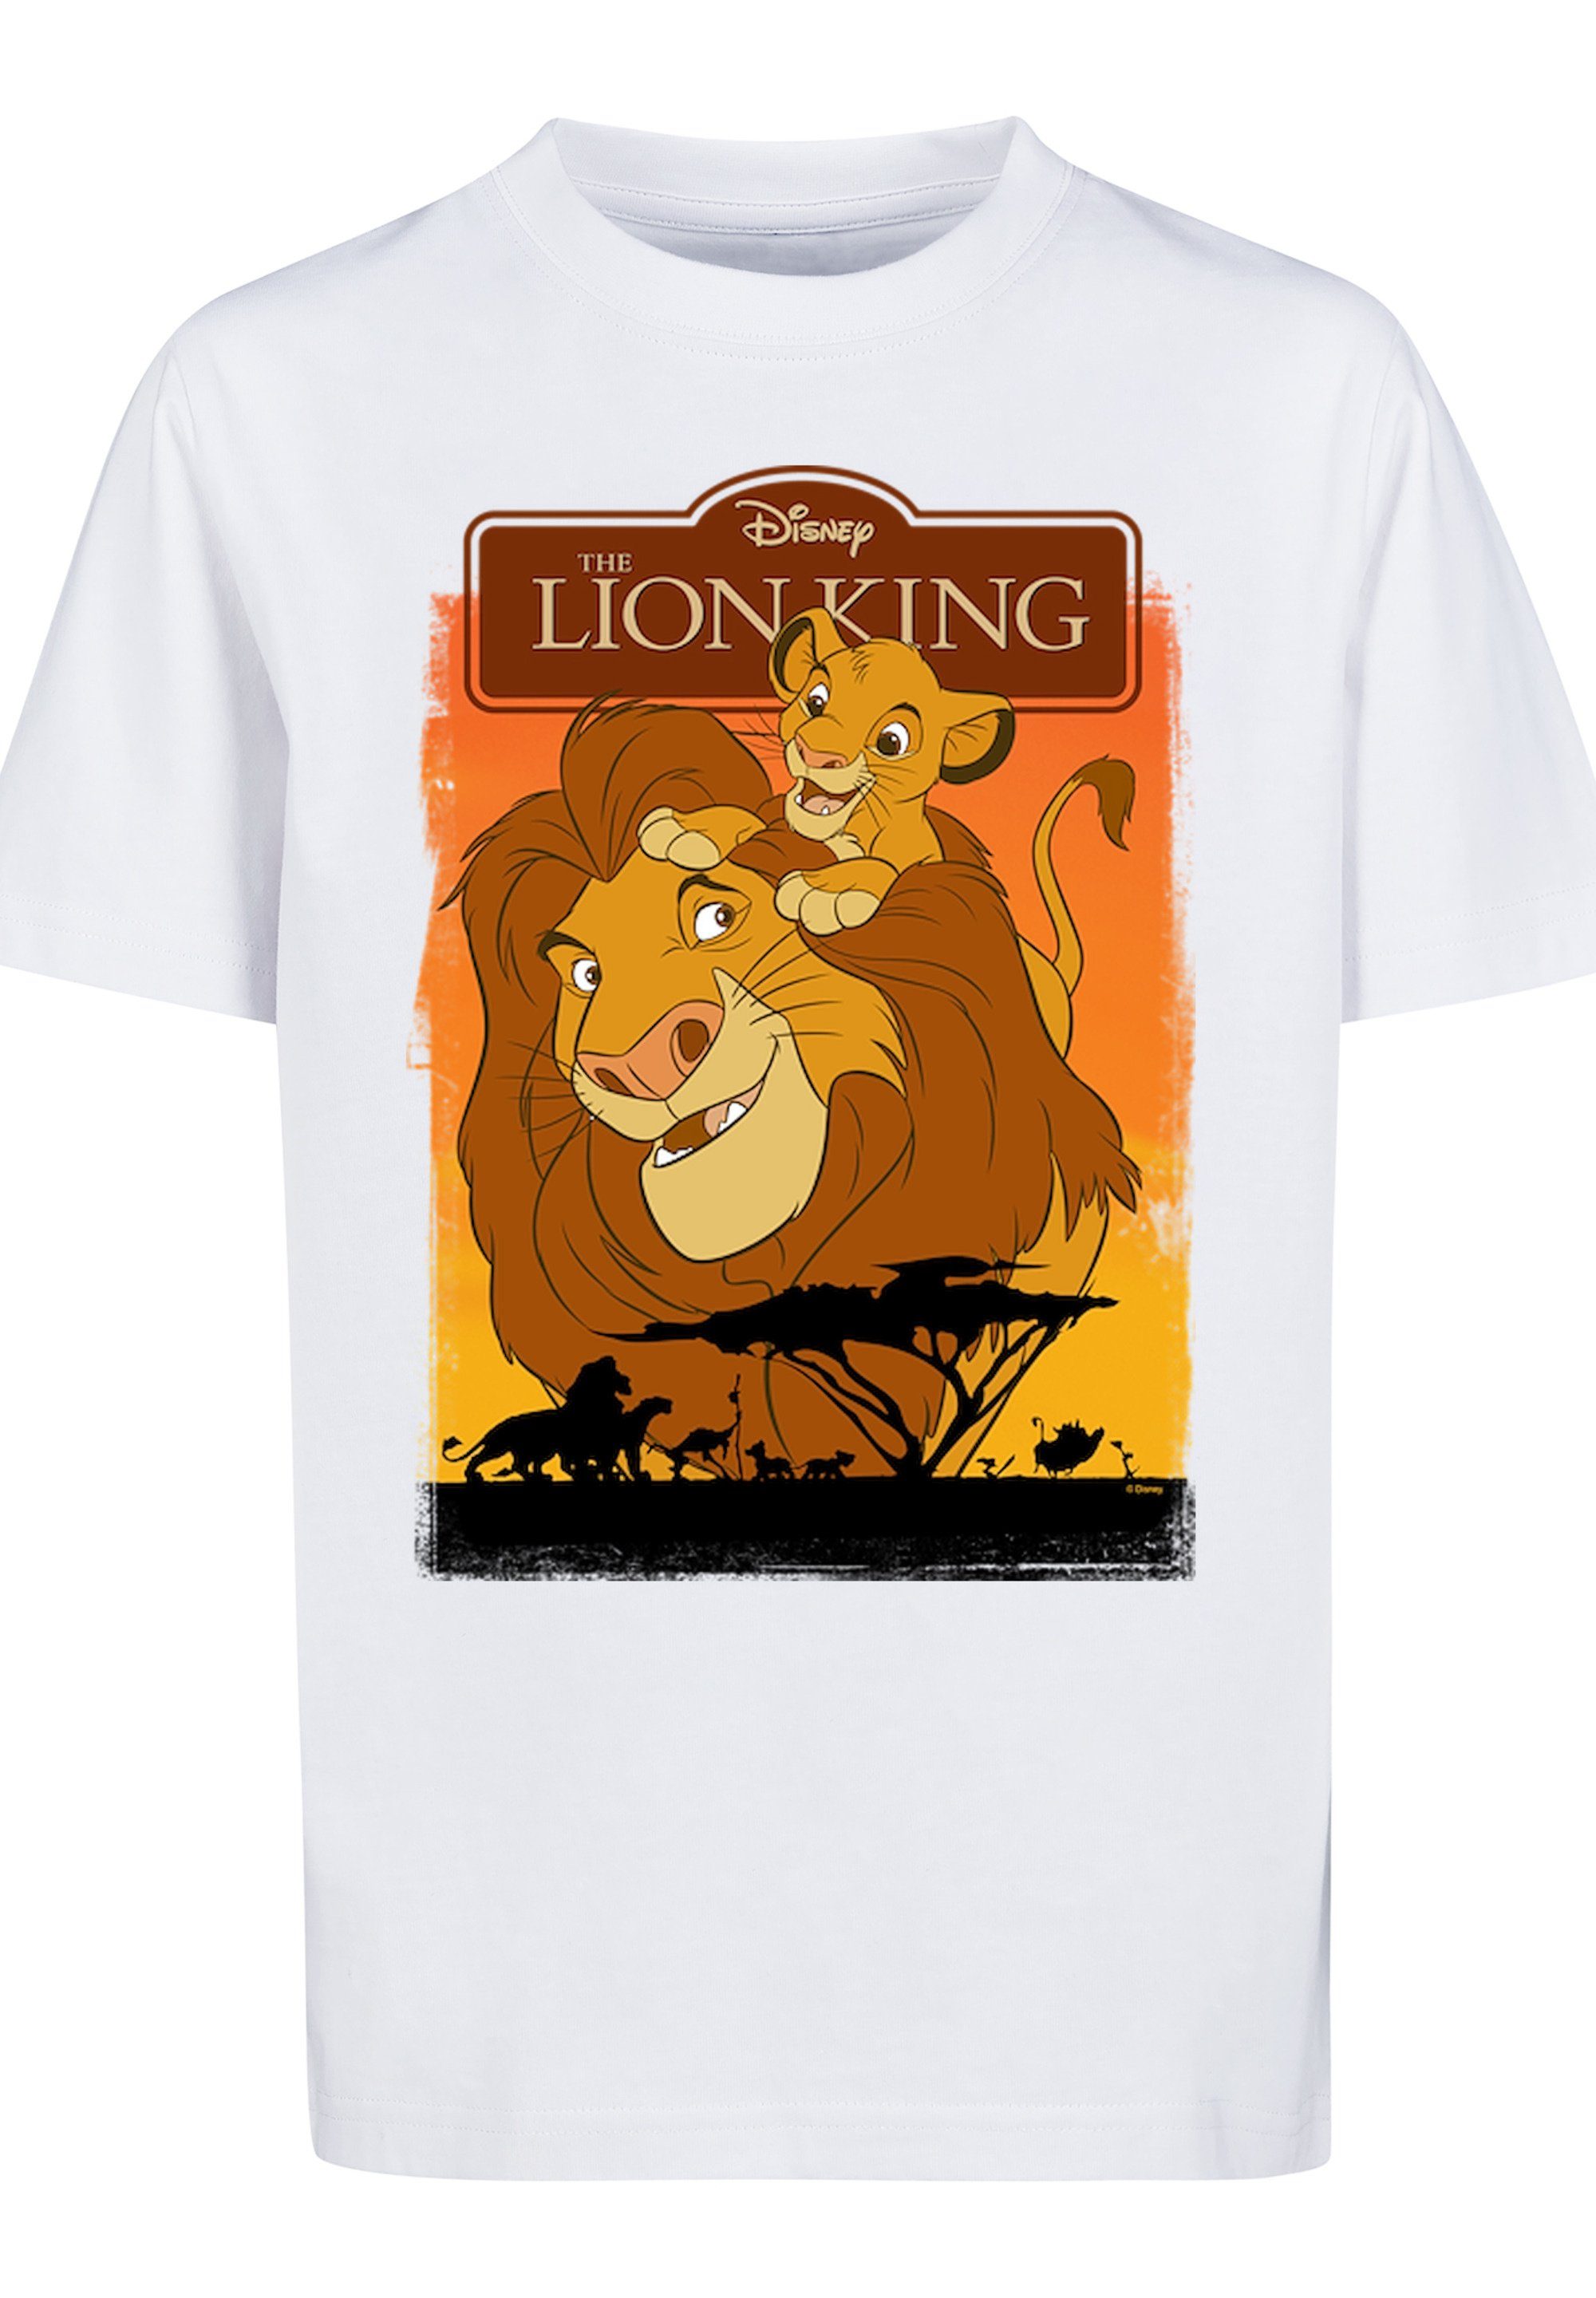 F4NT4STIC T-Shirt König der Print Mufasa Löwen Simba und